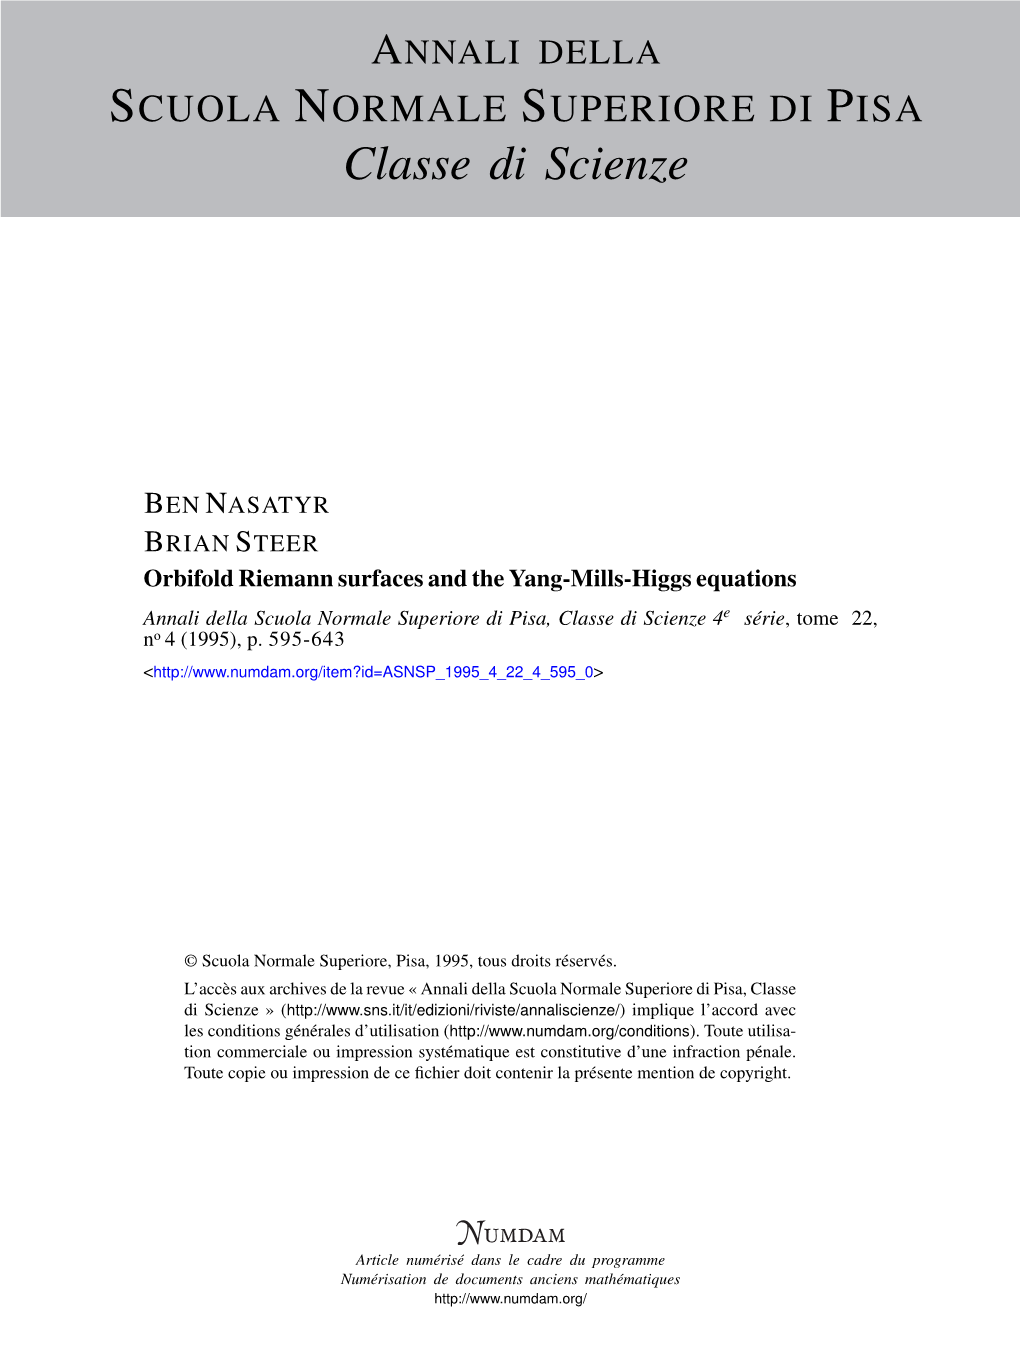 Orbifold Riemann Surfaces and the Yang-Mills-Higgs Equations Annali Della Scuola Normale Superiore Di Pisa, Classe Di Scienze 4E Série, Tome 22, No 4 (1995), P